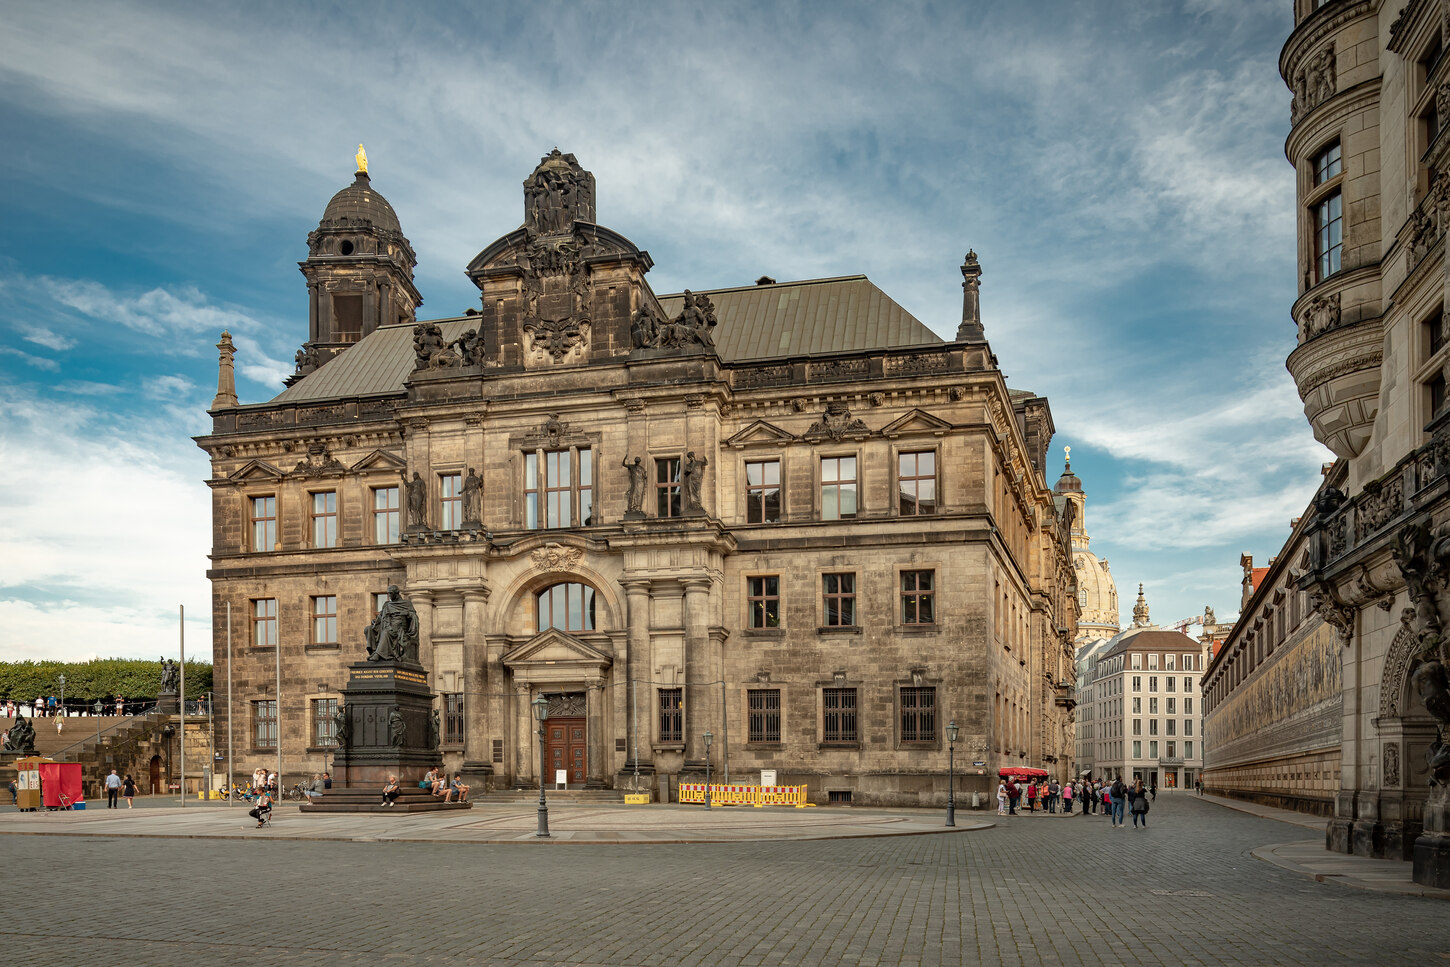 Landesamt für Denkmalpflege Sachsen im Ständehaus, Schloßplatz, Dresden